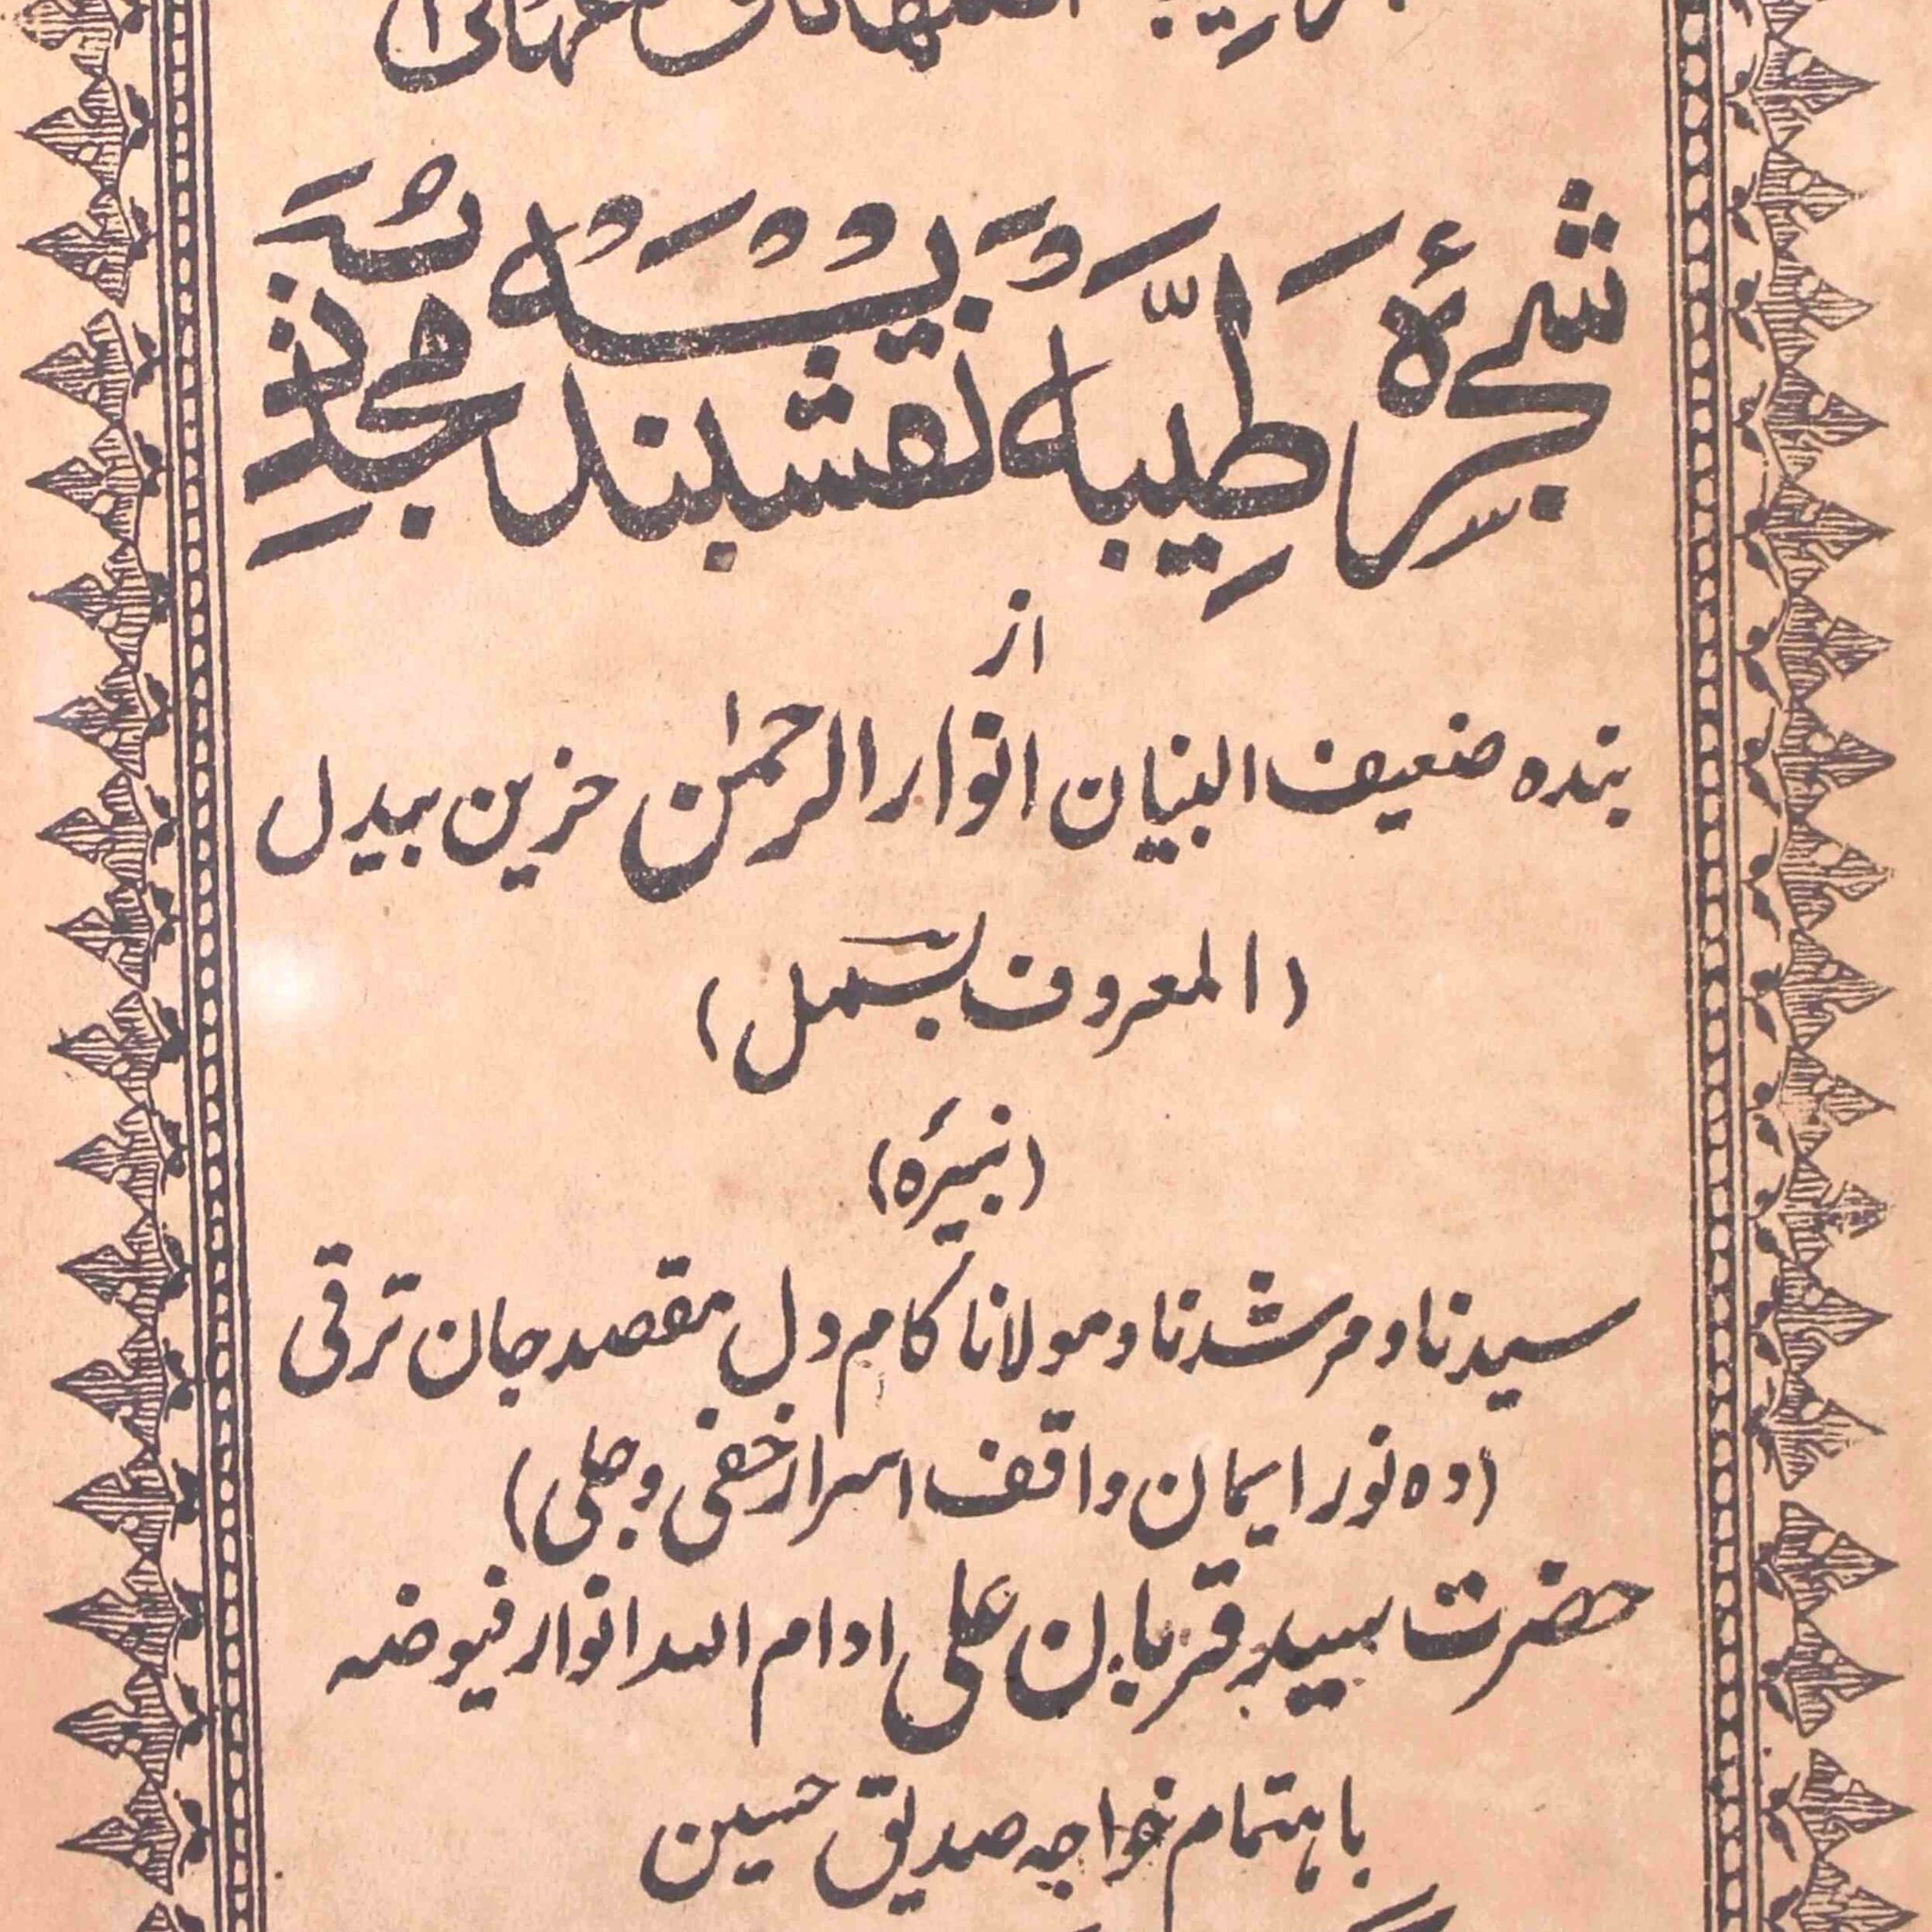 Shajra-e-Tayyaba Naqshbandiya Mujaddiya